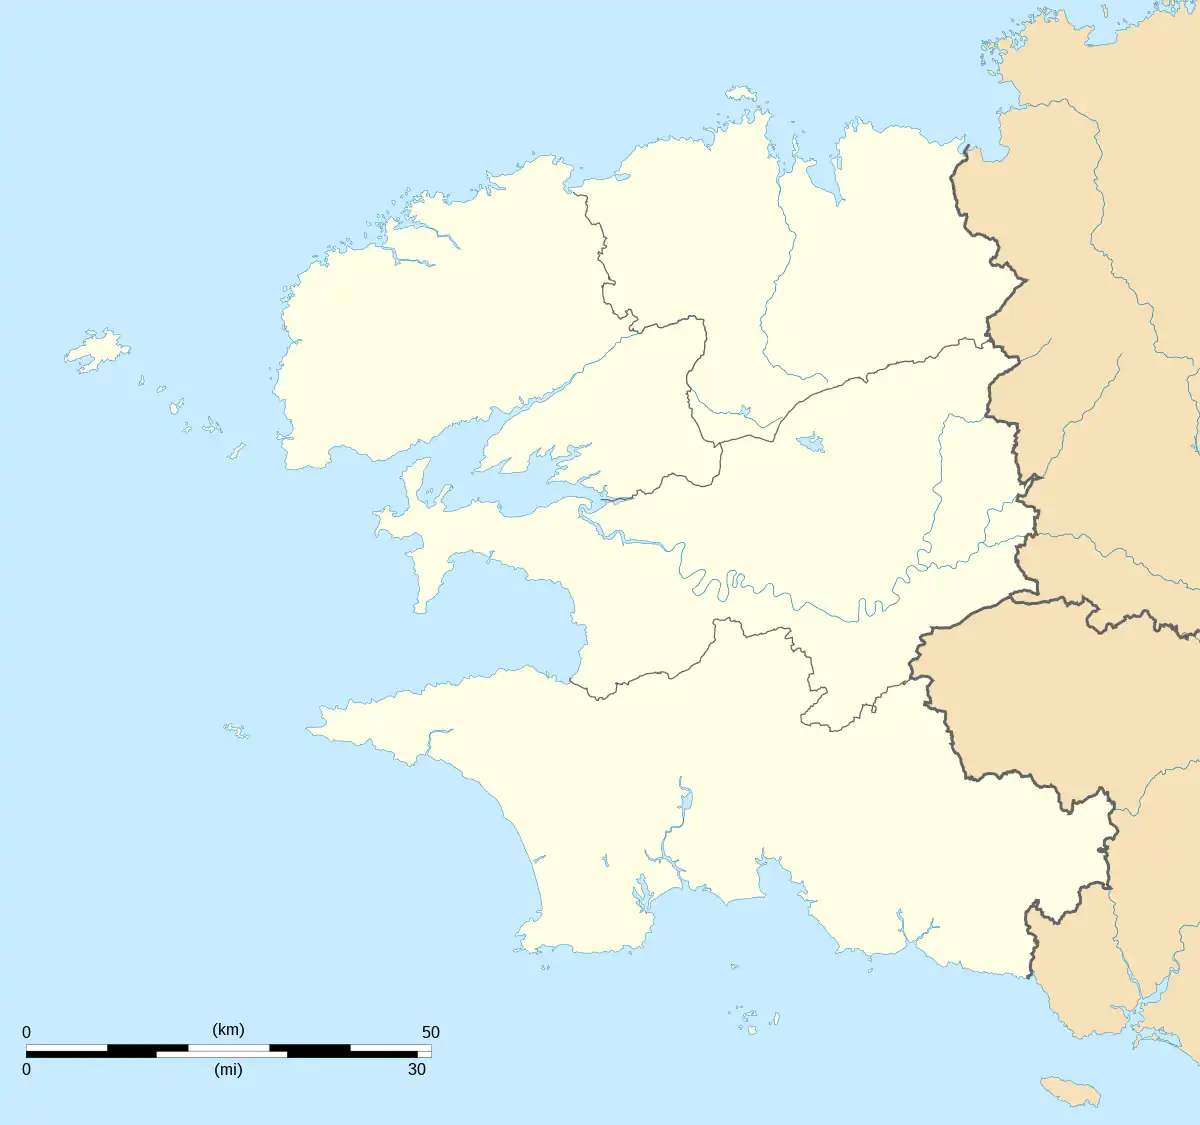 (Voir situation sur carte : Finistère)